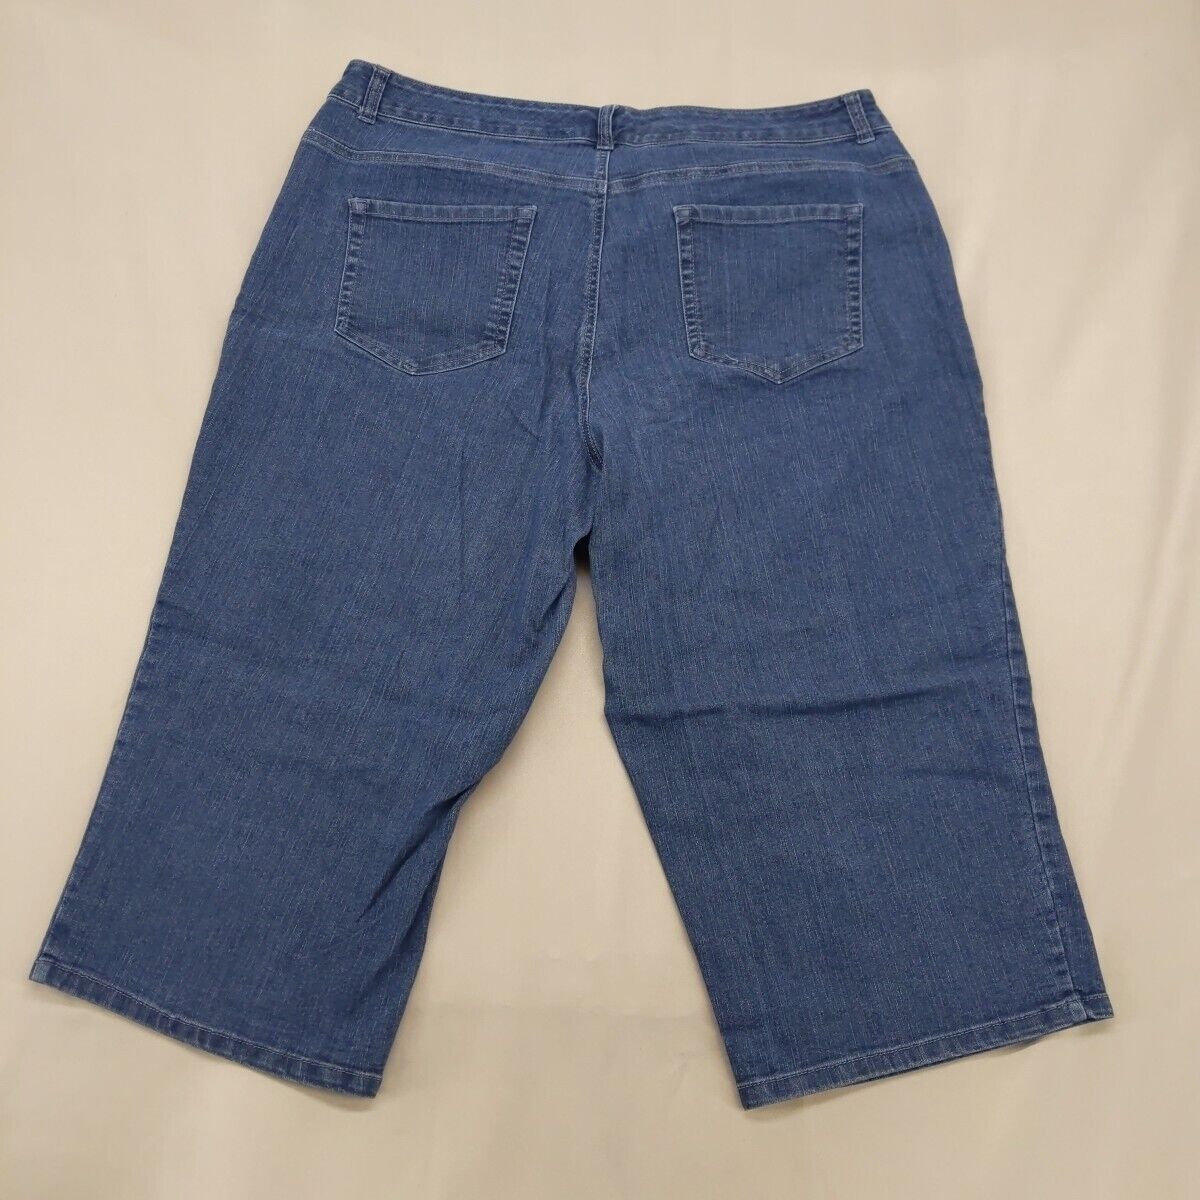 Faded Glory Stretch Capri Jeans 20W 40x19 - image 4